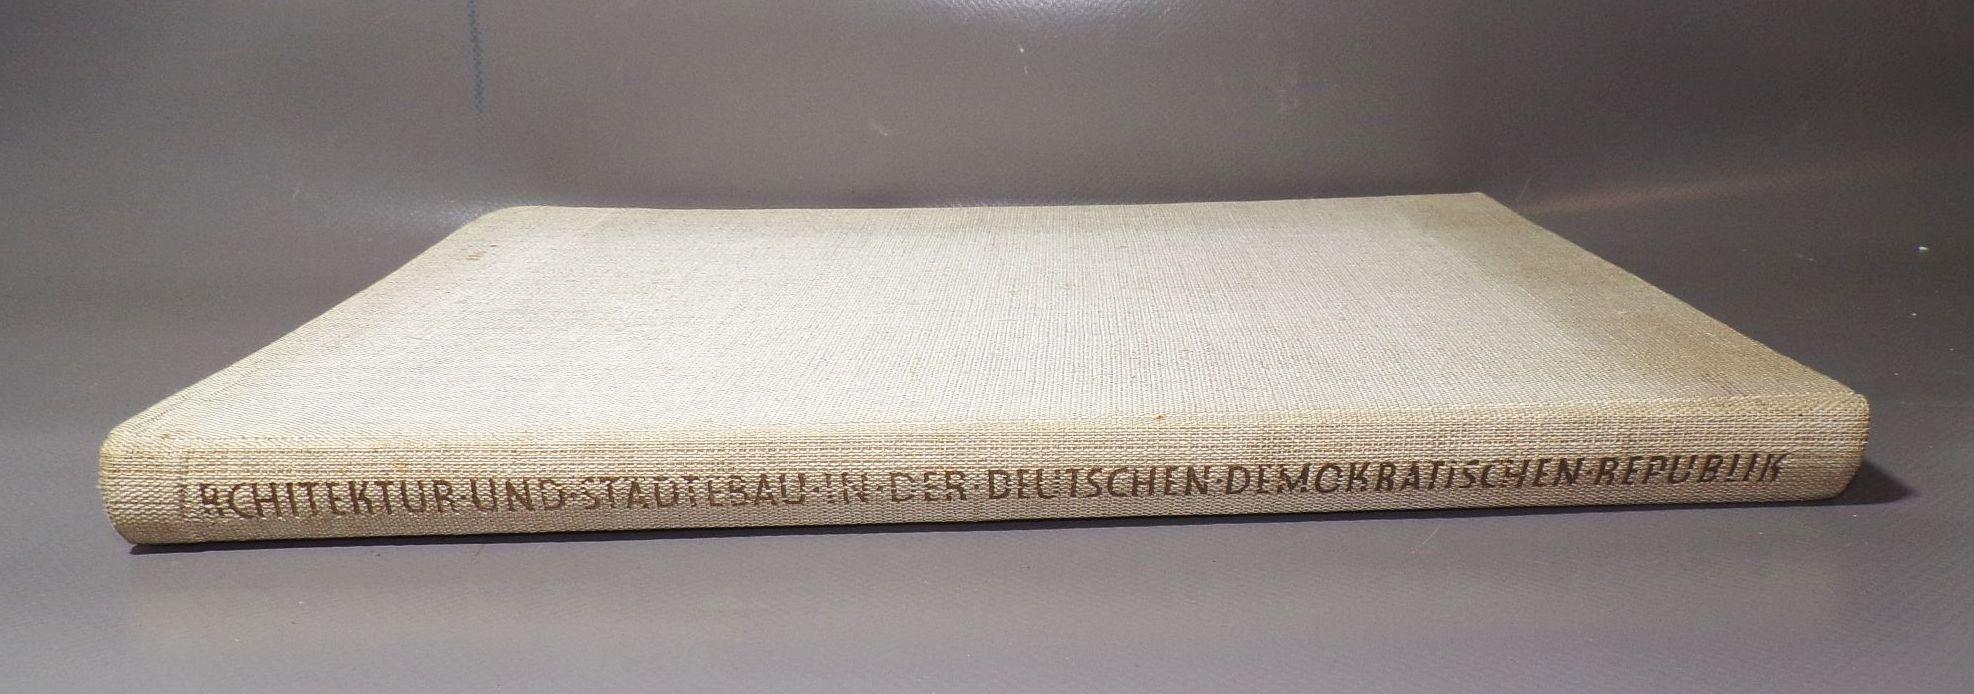 Architektur und Städtebau in der Deutschen Demokratischen Republik 1959 Buch